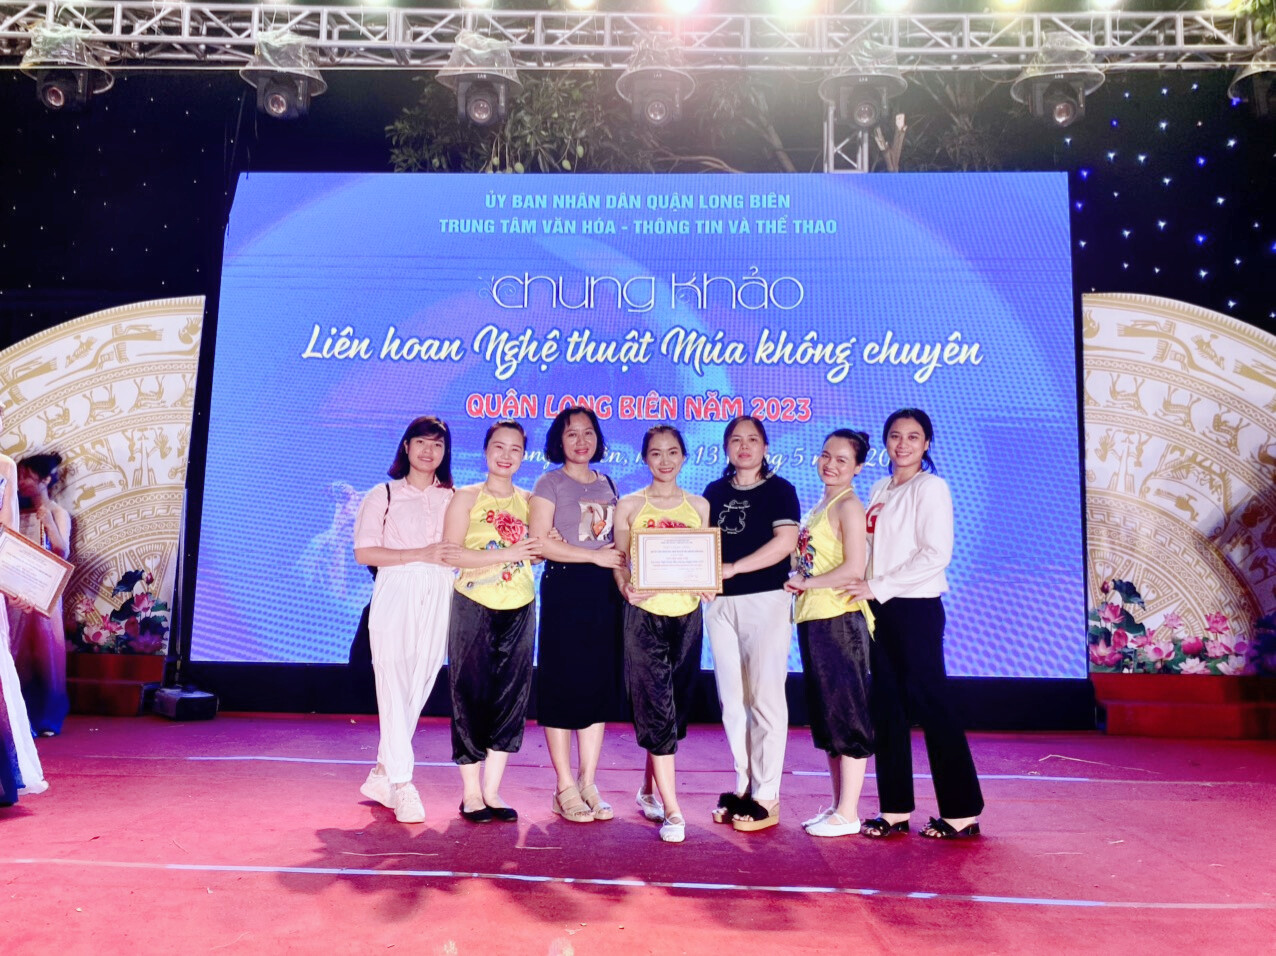 Trường MN Tuổi Hoa tham gia liên hoan nghệ thuật múa không chuyên do Trung tâm Văn Hoá - Thông Tin và Thể Thao Quận Long Biên tổ chức